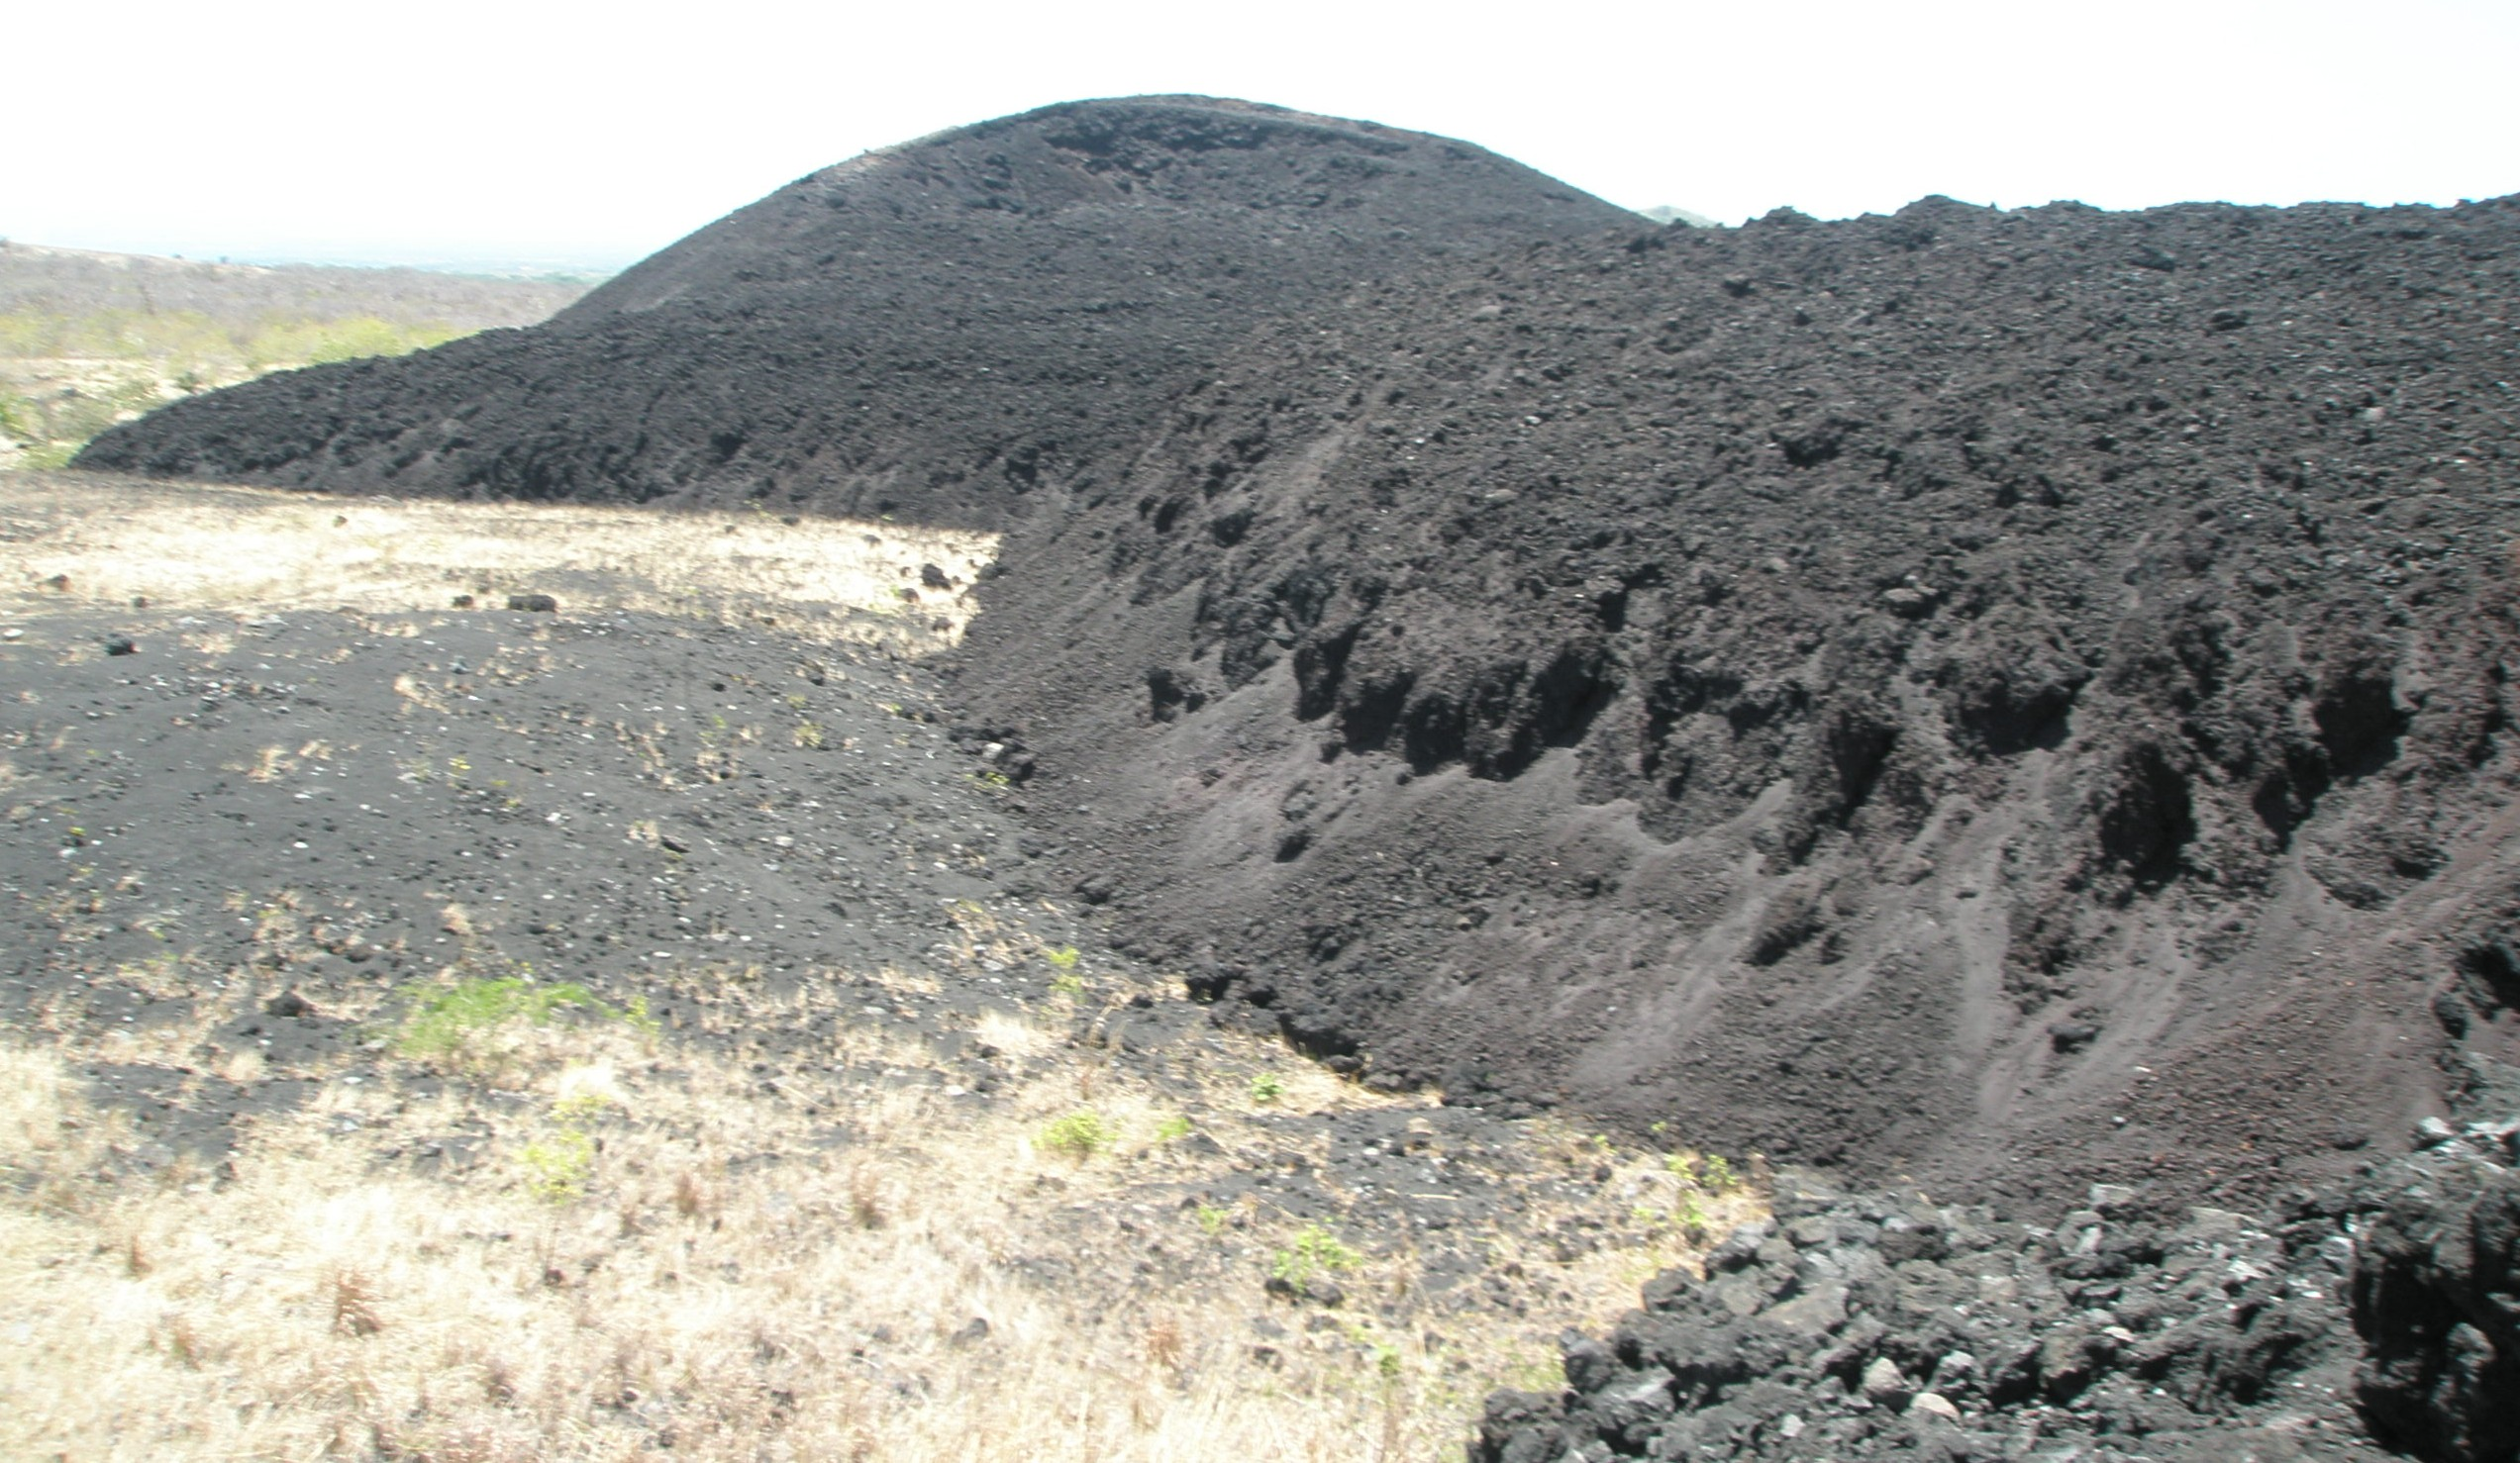 Nejmladší vulkán ve Střední Americe vznikl v dubnu 1850 a je jedním z nejaktivnějších vulkánu v Nikaragui. Cerro Negro je největší ze skupiny čtyř popelových kuţelů v této oblasti.